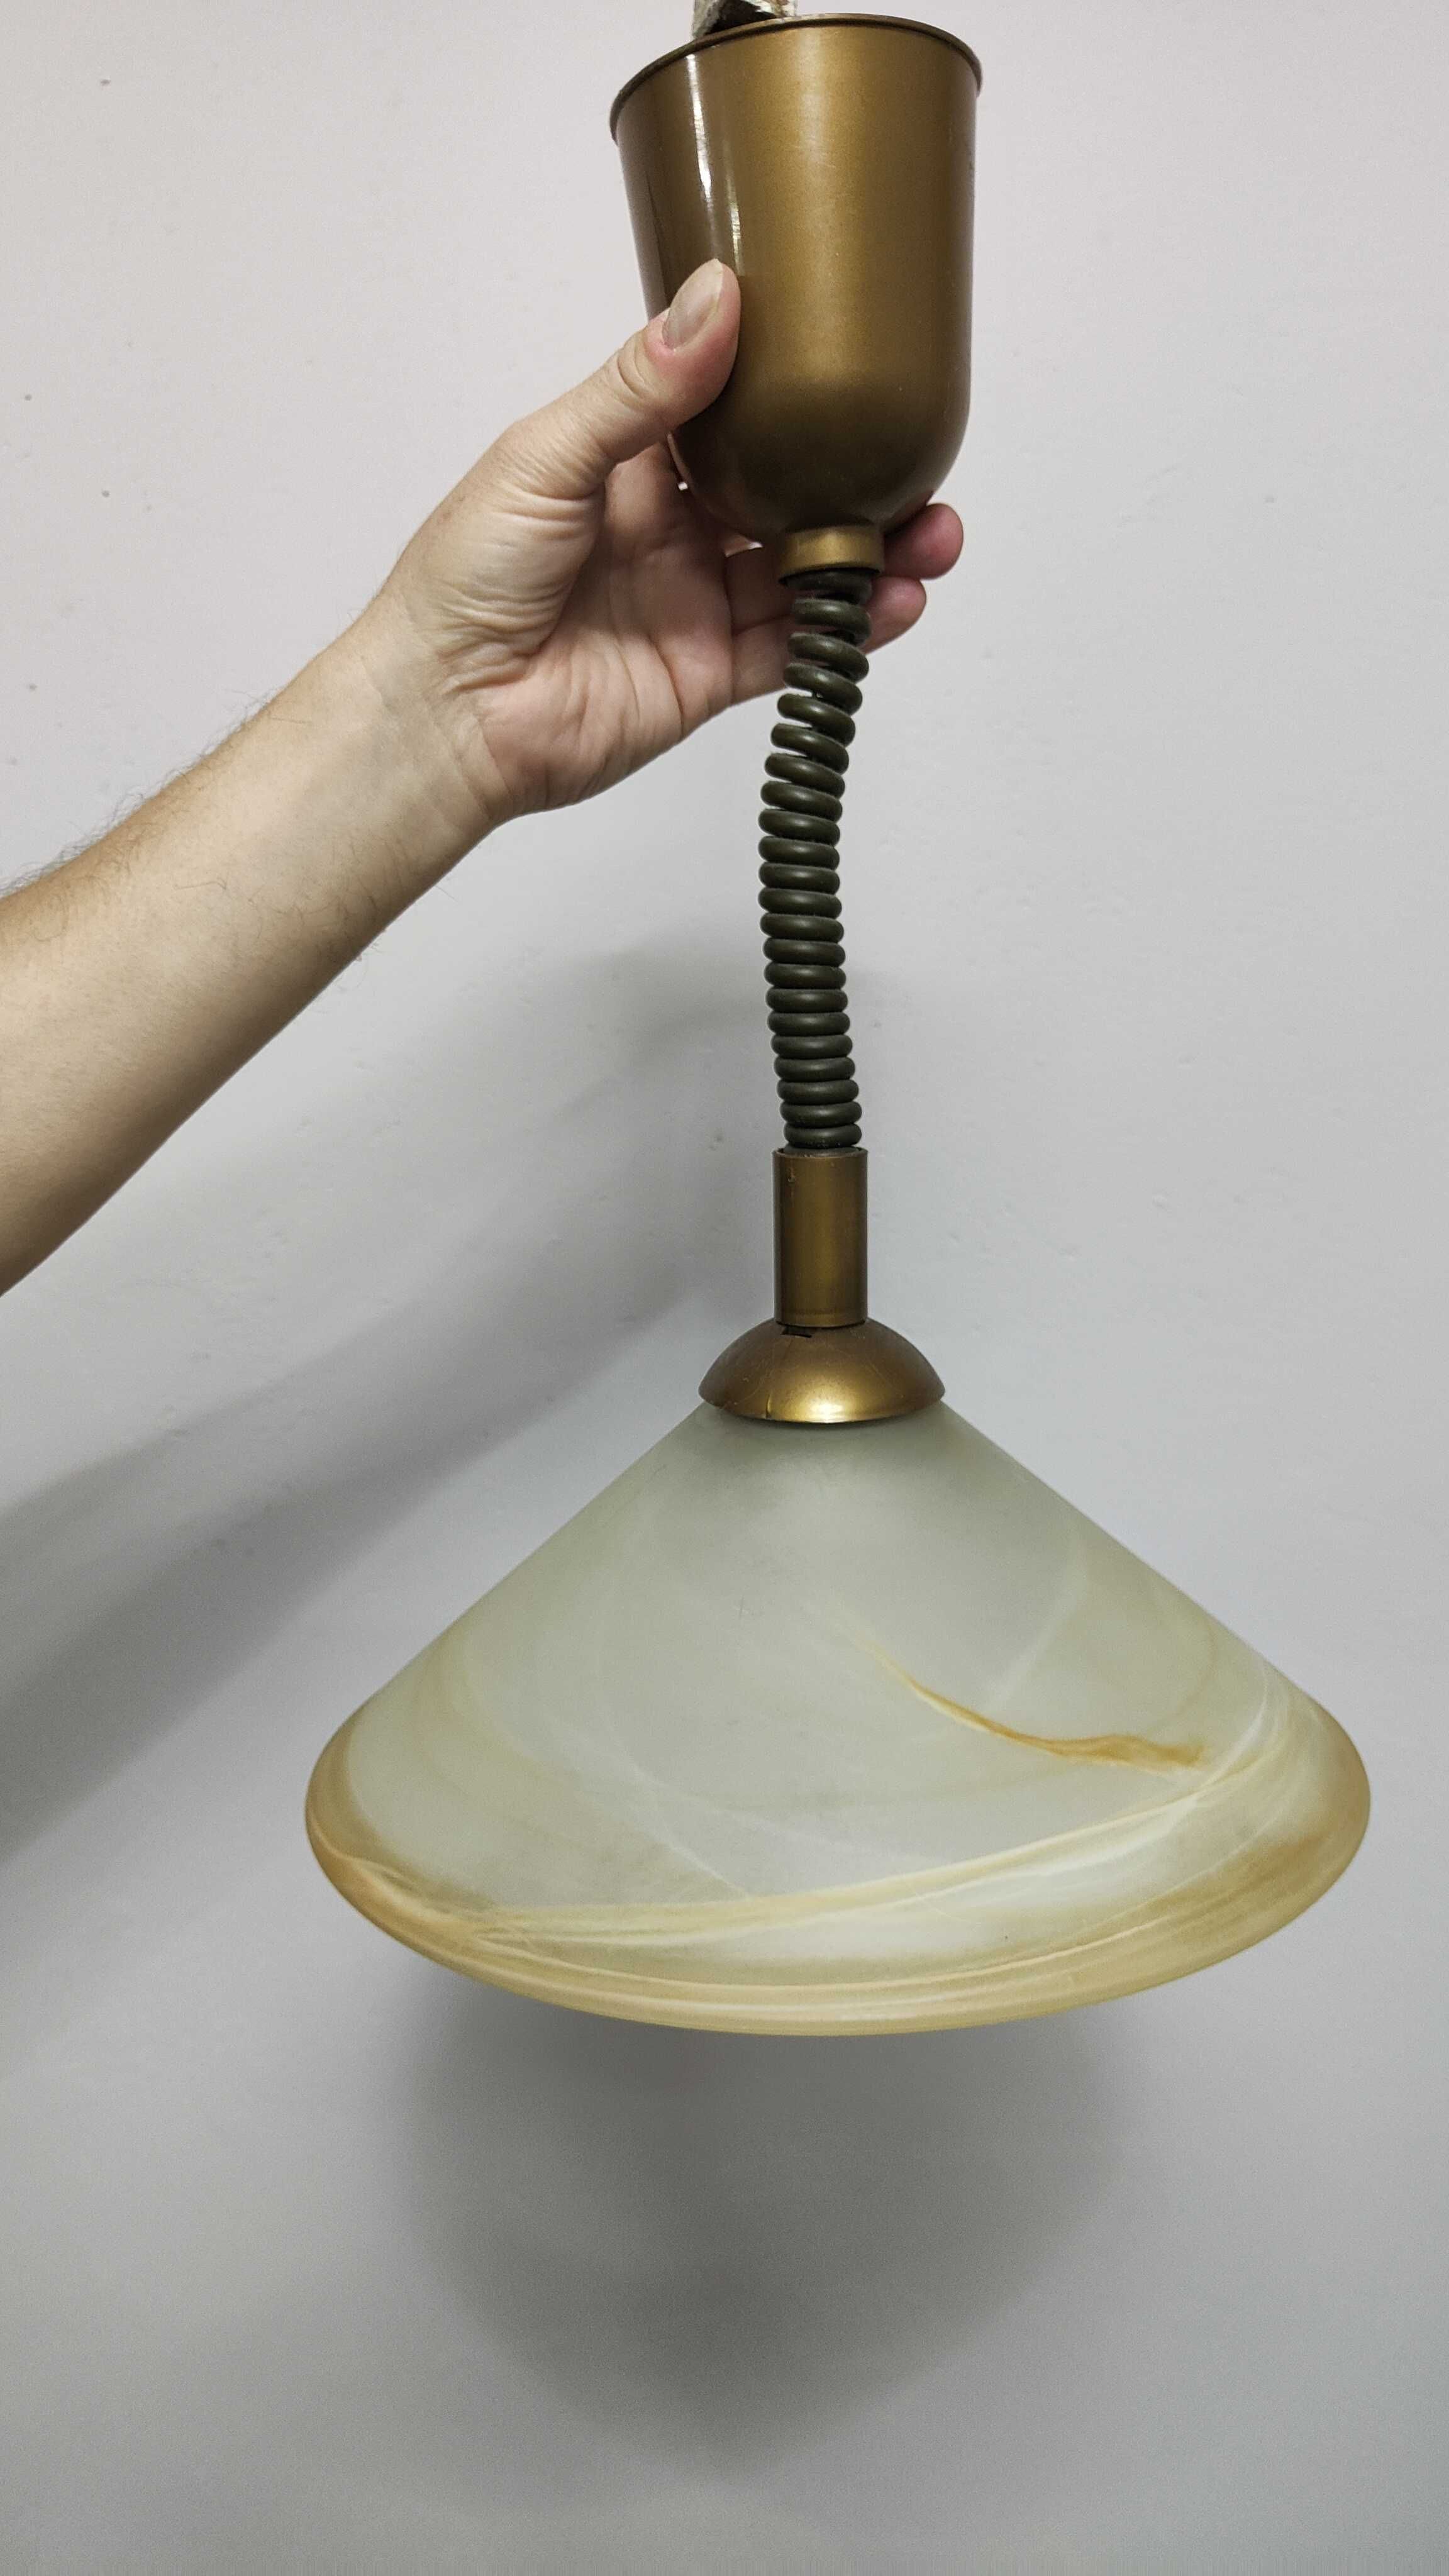 Lampa kuchenna szklana obniżana klosz mleczno -bursztynowy.